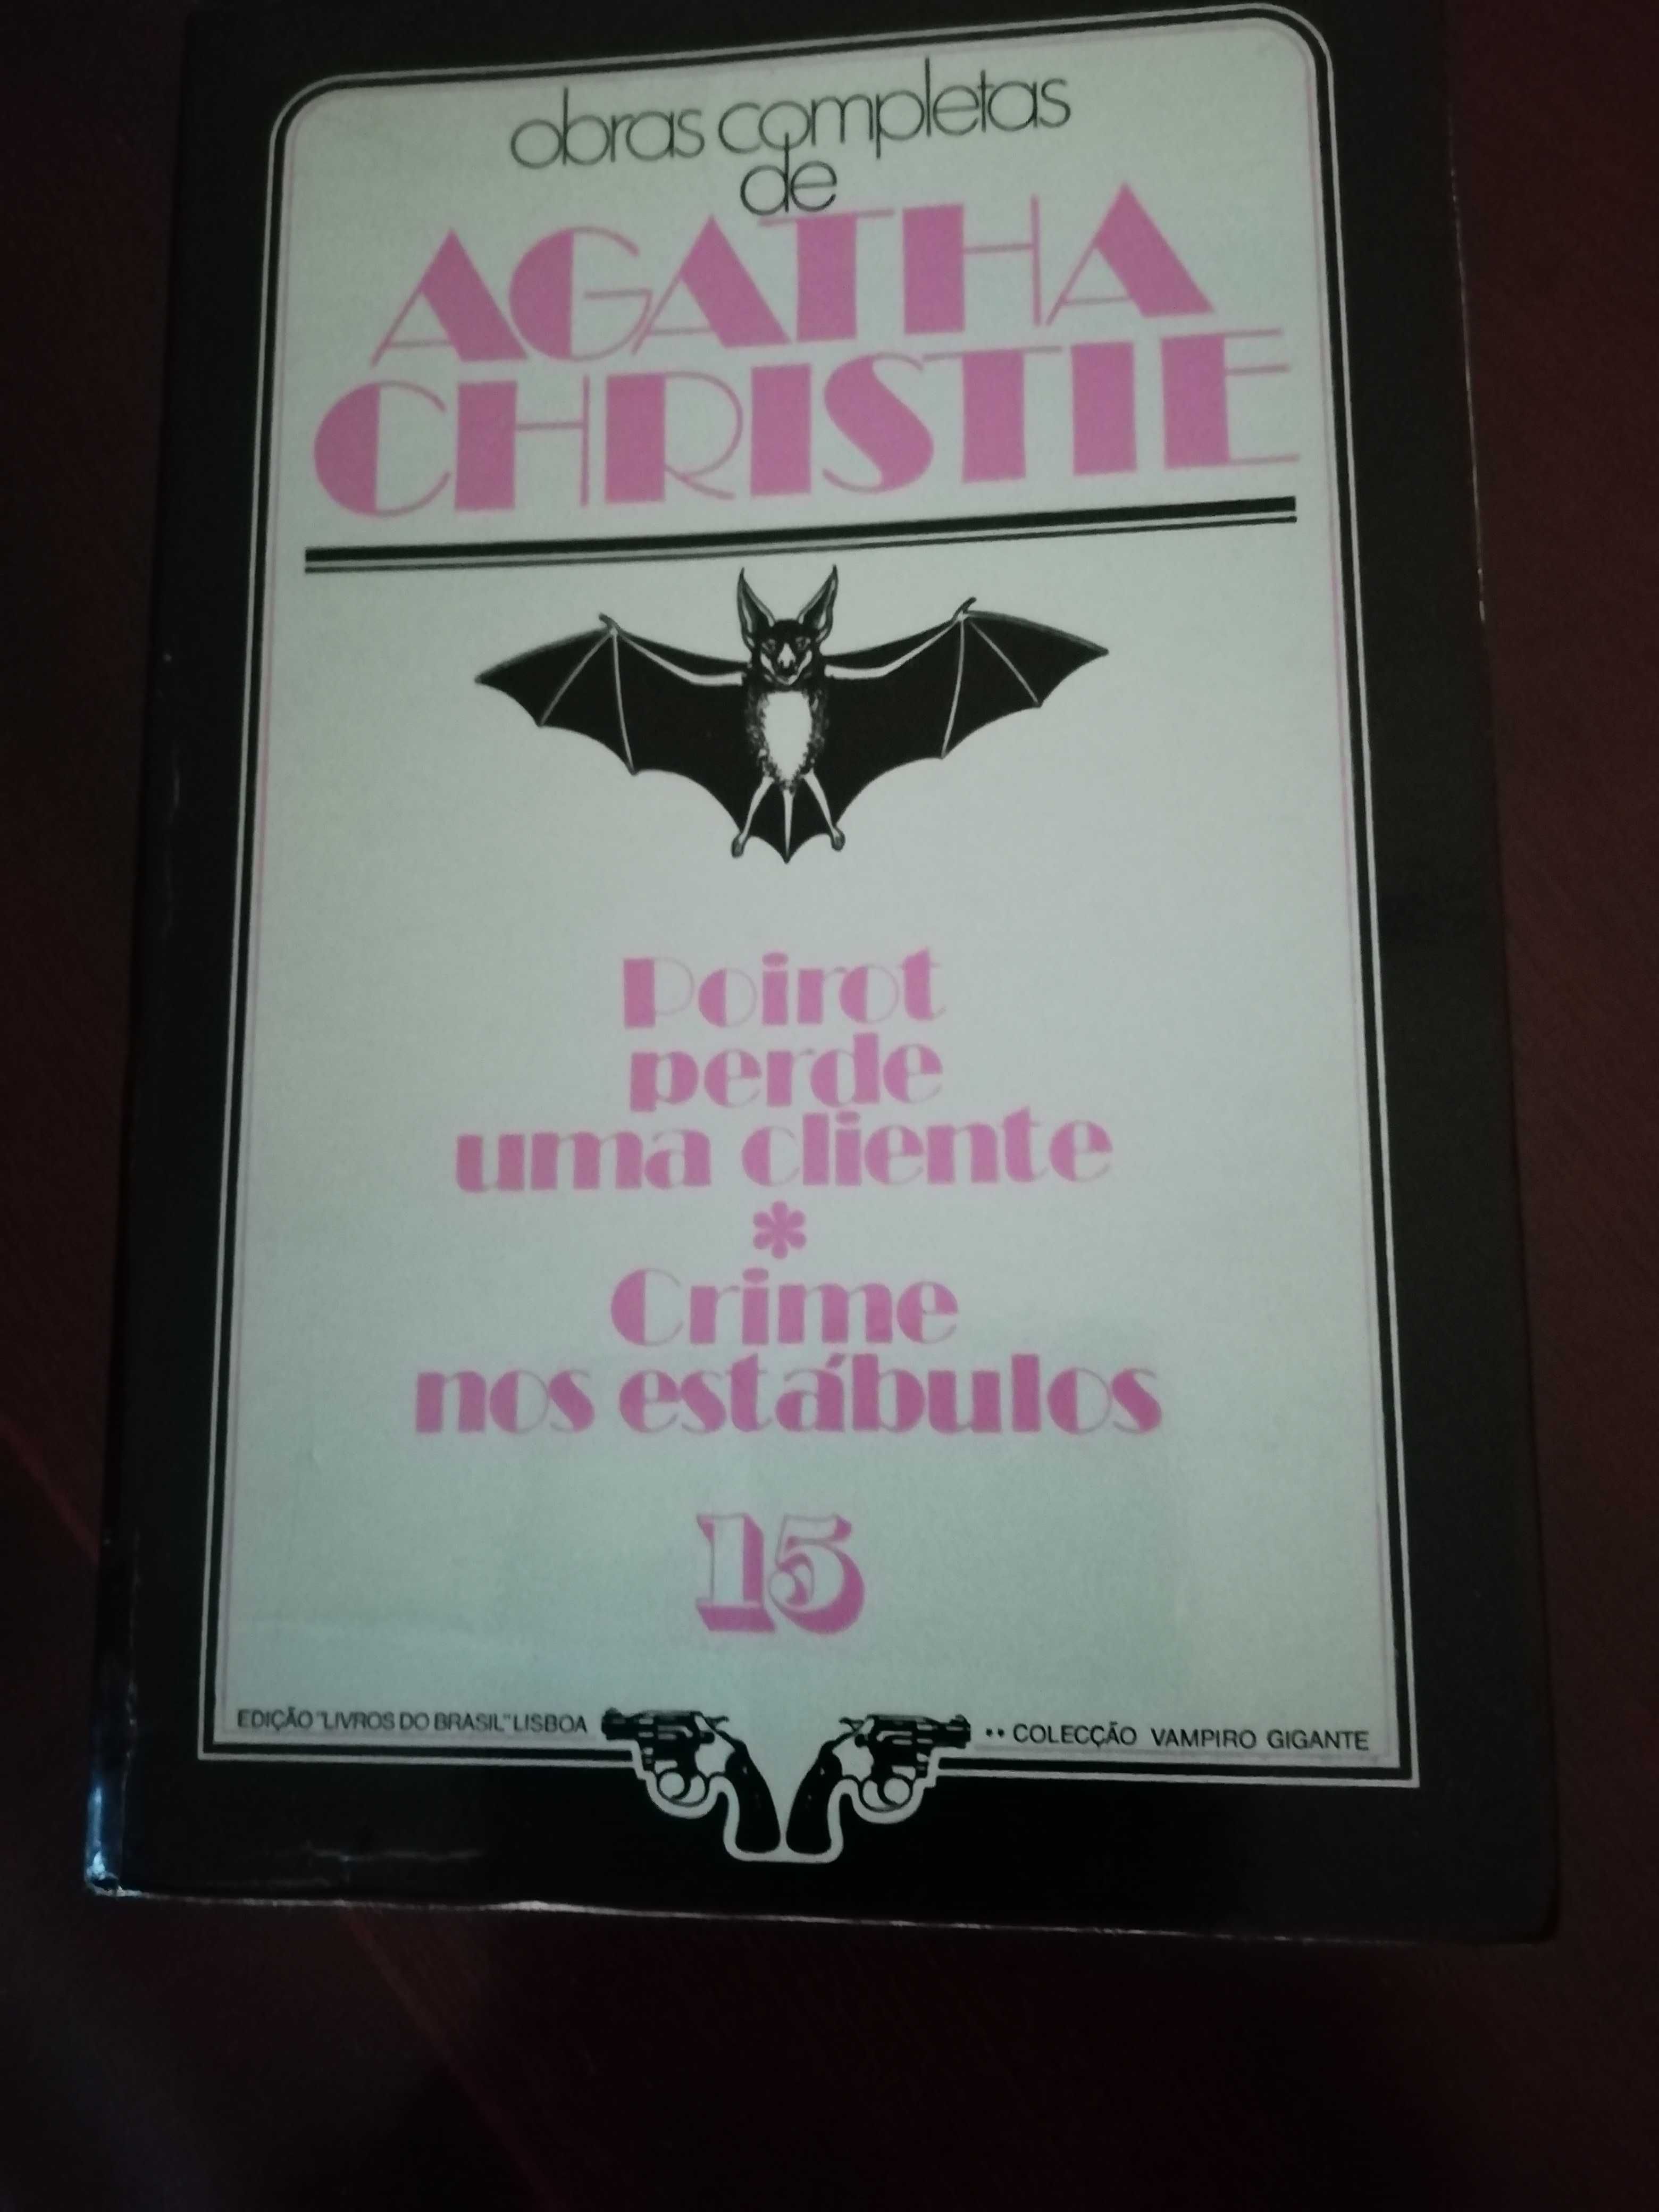 Obras completas de Agatha Christie Nºs. 18 e 20